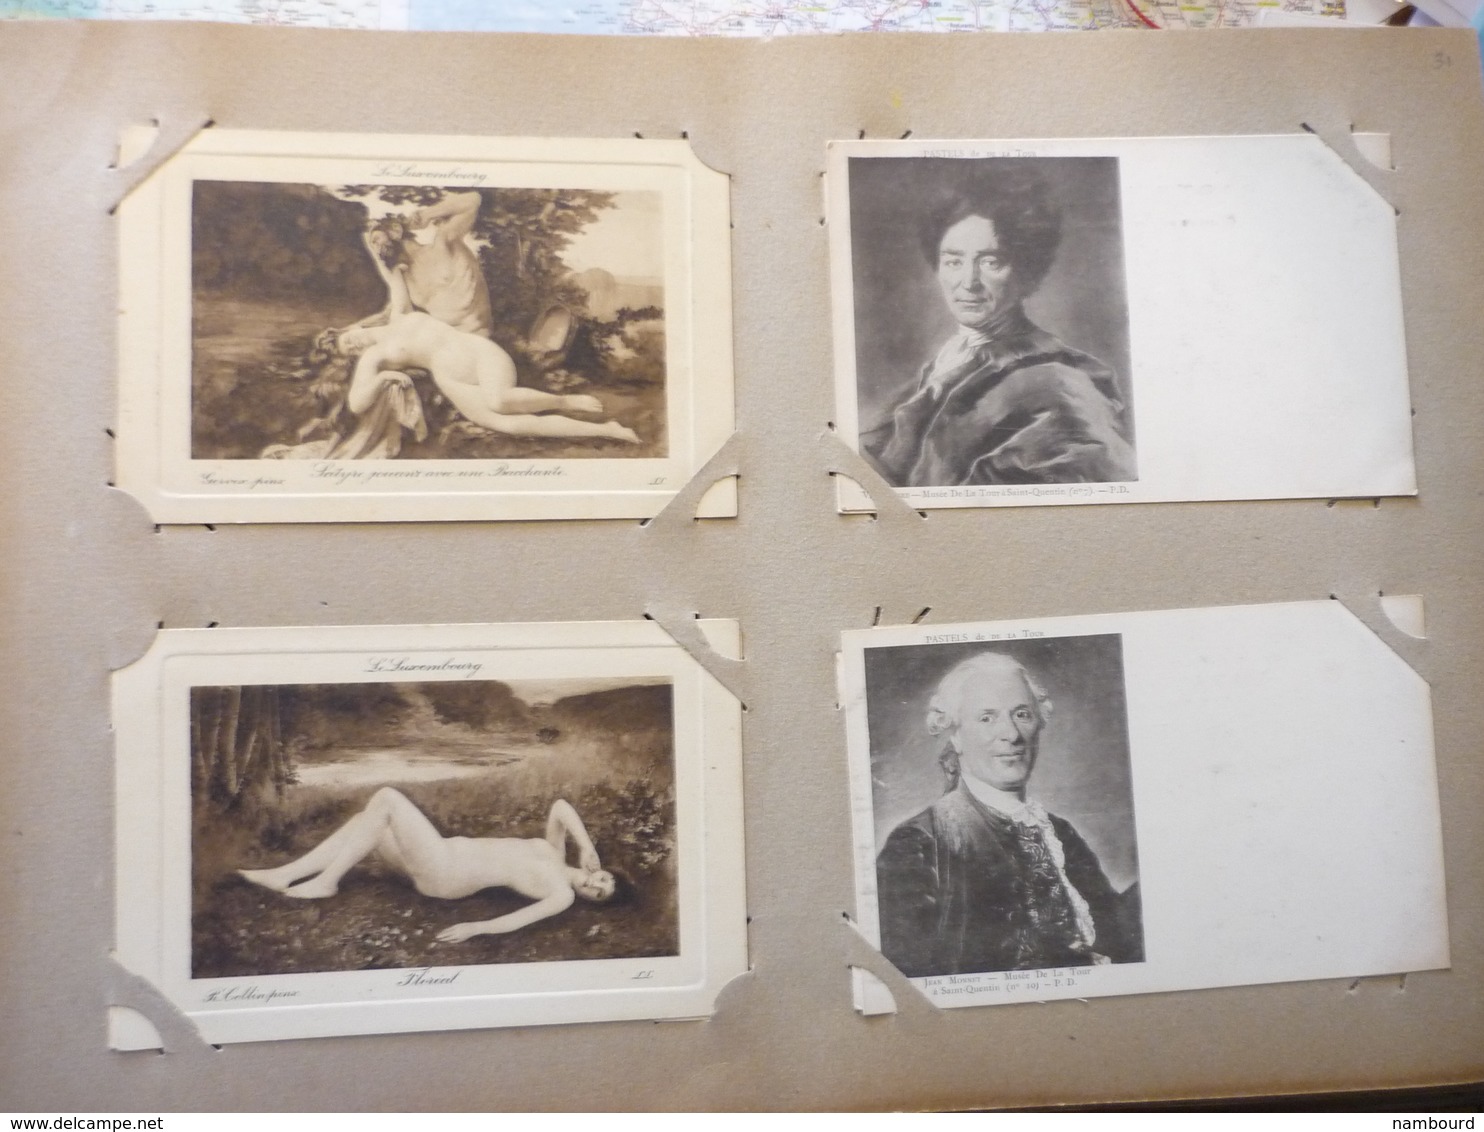 Album ancien contenant 389 cartes postales de tableaux célèbres